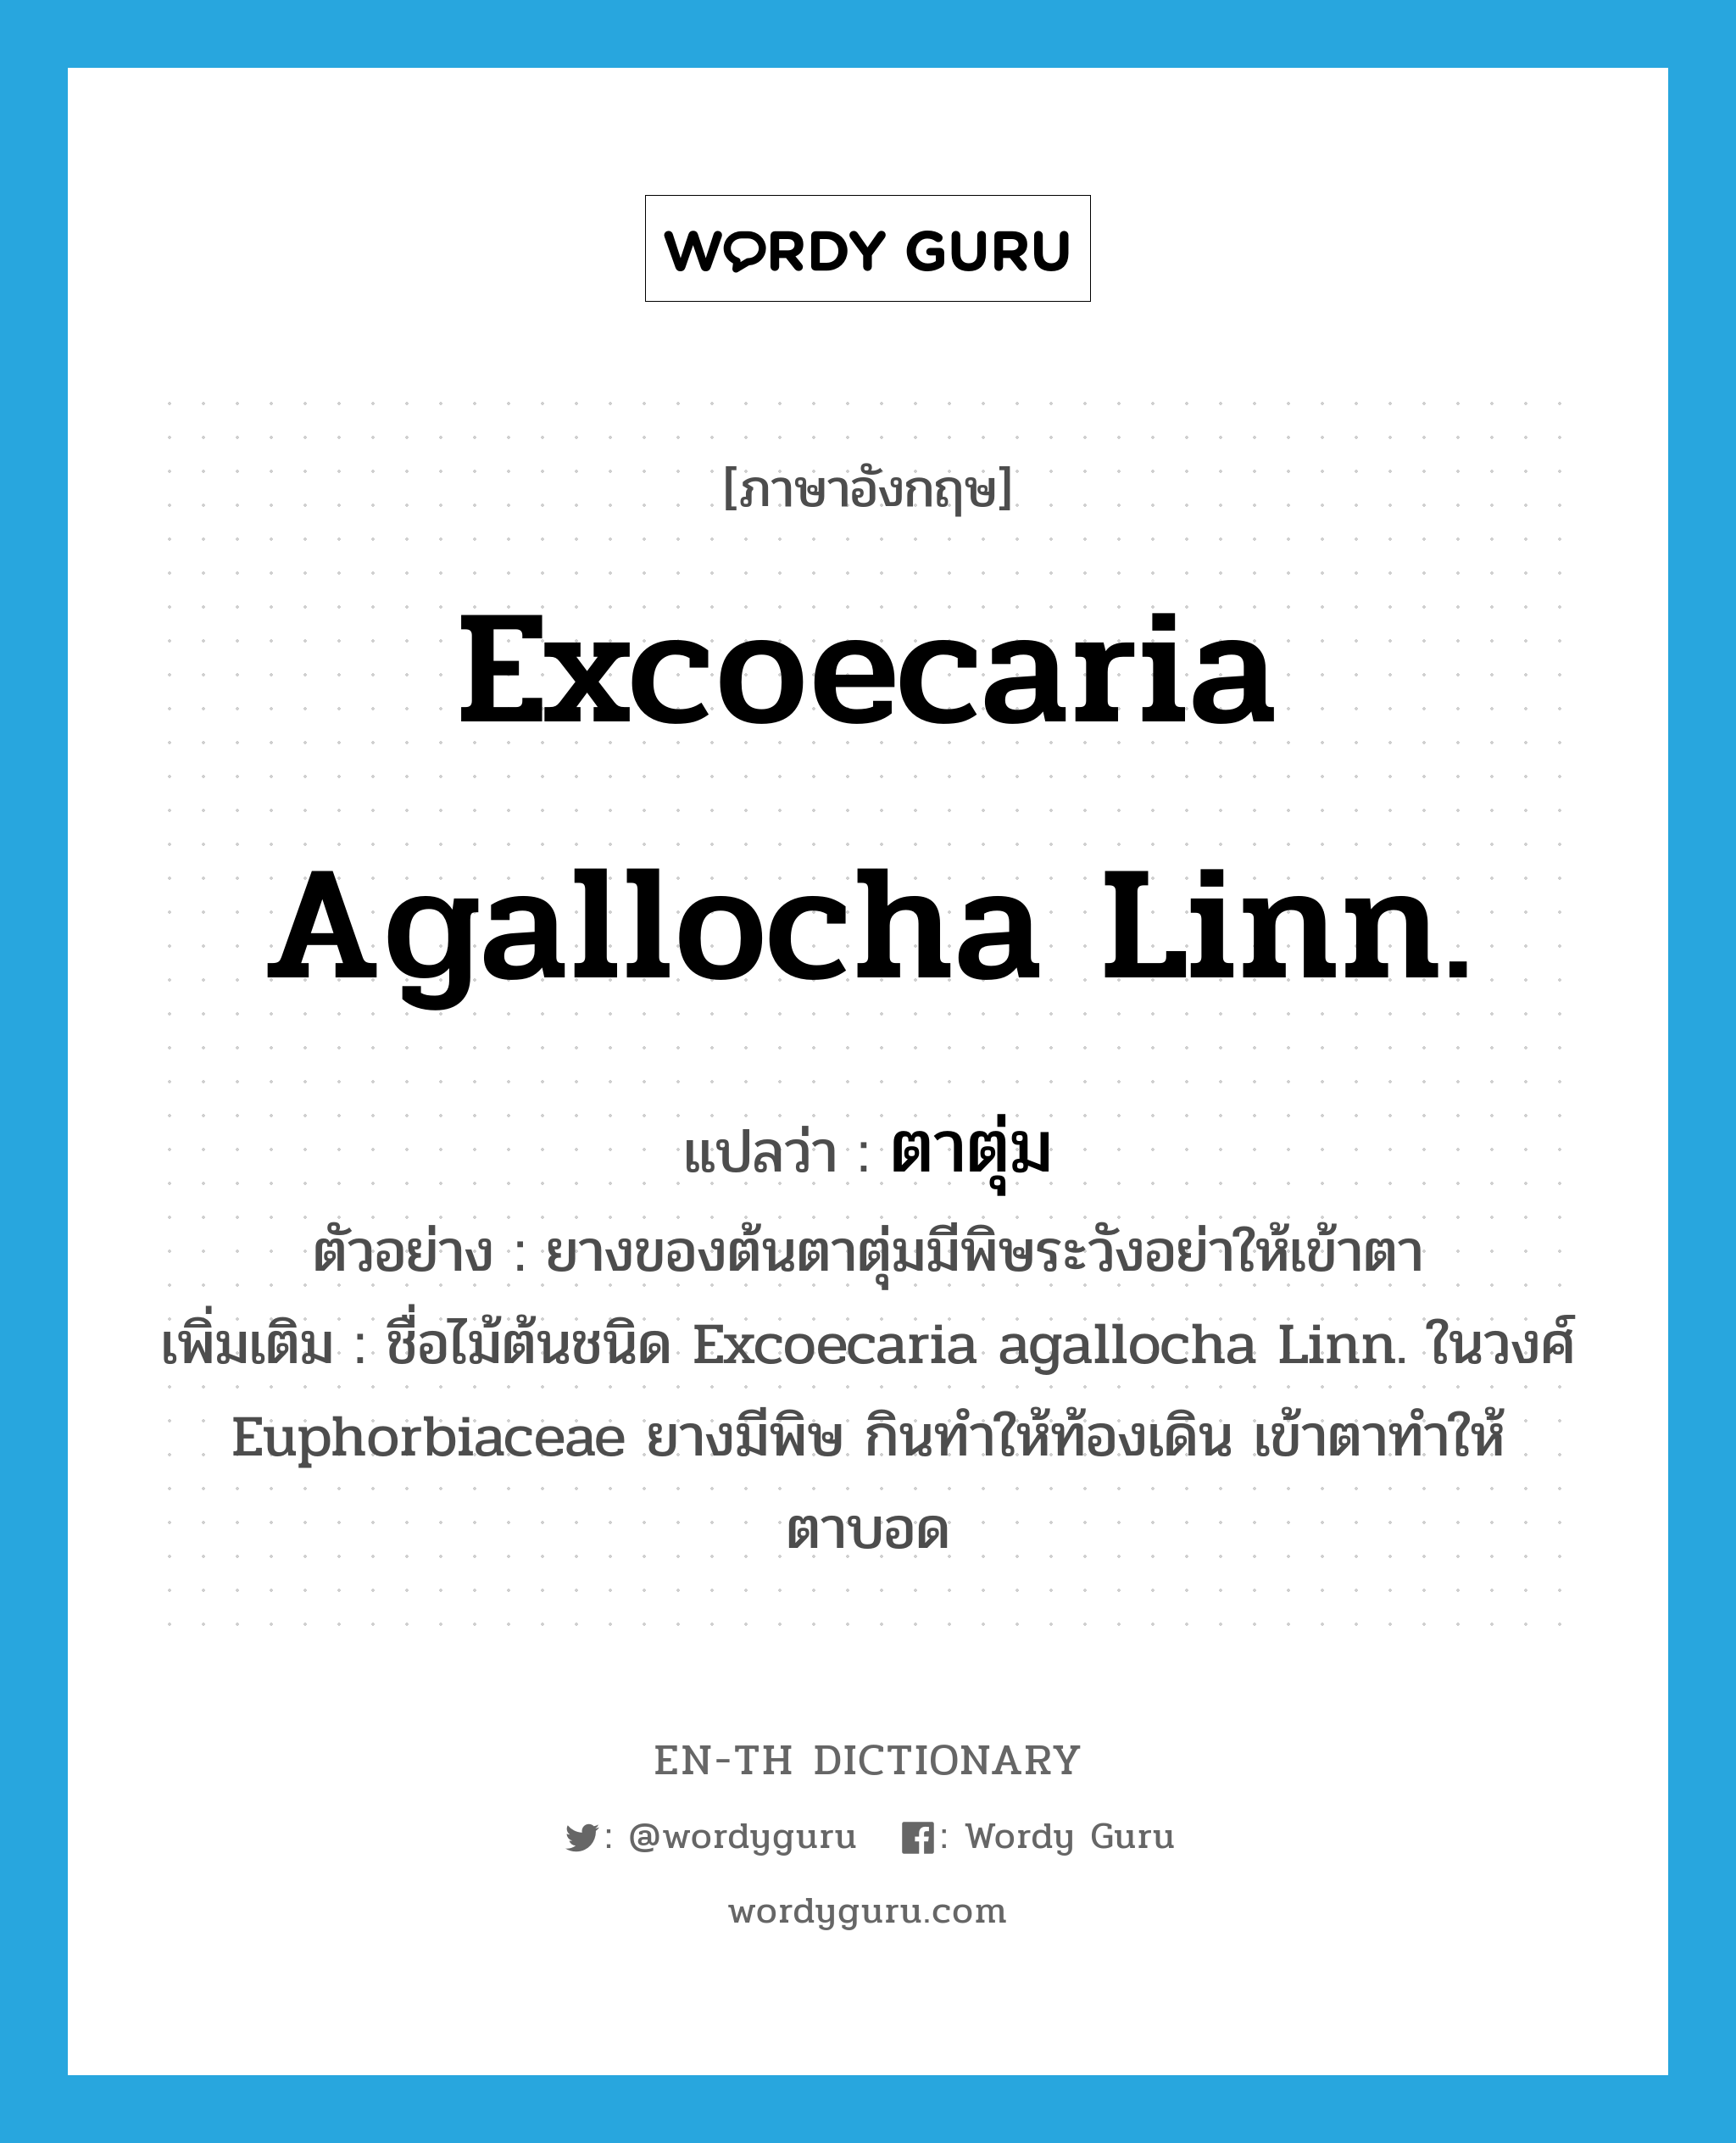 ตาตุ่ม ภาษาอังกฤษ?, คำศัพท์ภาษาอังกฤษ ตาตุ่ม แปลว่า Excoecaria agallocha Linn. ประเภท N ตัวอย่าง ยางของต้นตาตุ่มมีพิษระวังอย่าให้เข้าตา เพิ่มเติม ชื่อไม้ต้นชนิด Excoecaria agallocha Linn. ในวงศ์ Euphorbiaceae ยางมีพิษ กินทำให้ท้องเดิน เข้าตาทำให้ตาบอด หมวด N